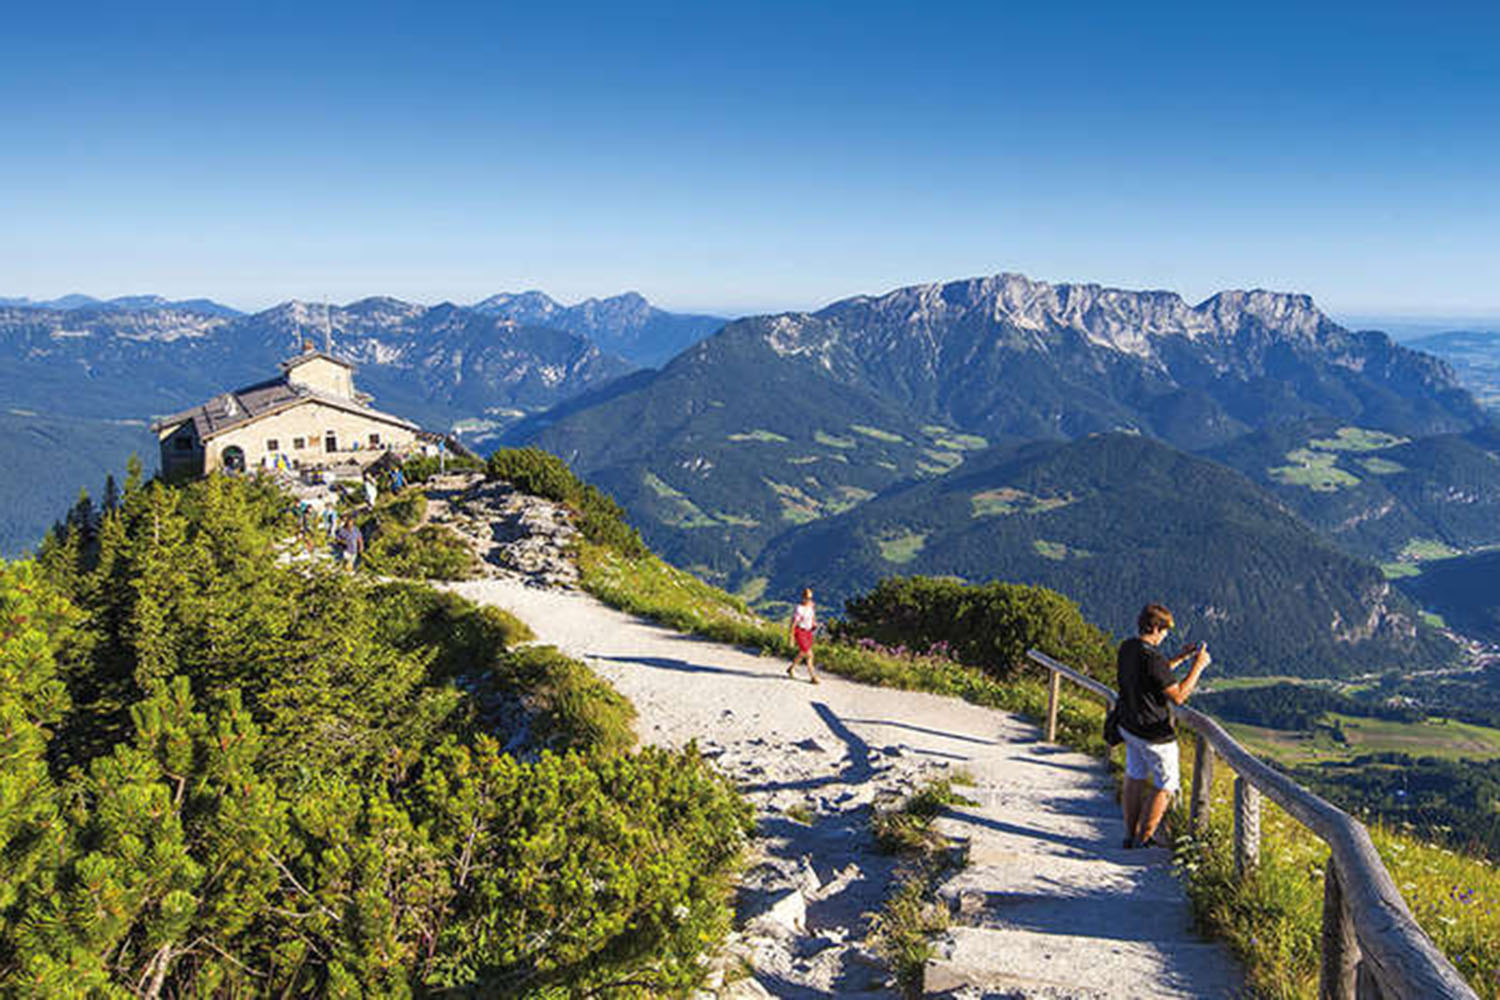 Blick über den Aussichtspunkt auf dem Kehlsteinhaus mit dem Untersberg und dem Berchtesgadener Talkessel